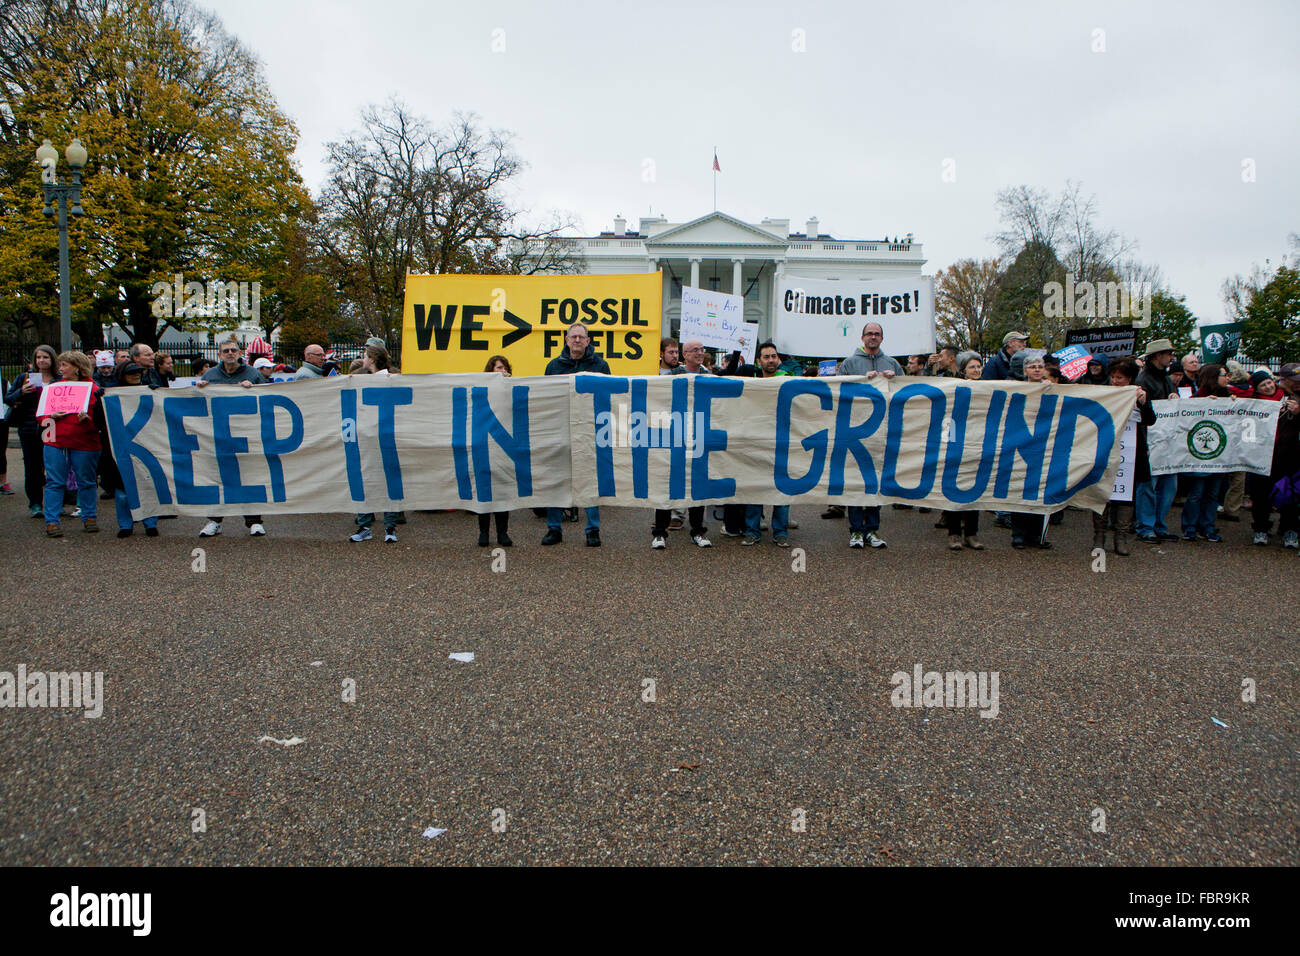 Novembre 21, 2015, Washington DC USA: attivisti ambientali protesta di fronte alla Casa Bianca (manifestanti tenendo premuto 'tenere in terra' banner) Foto Stock